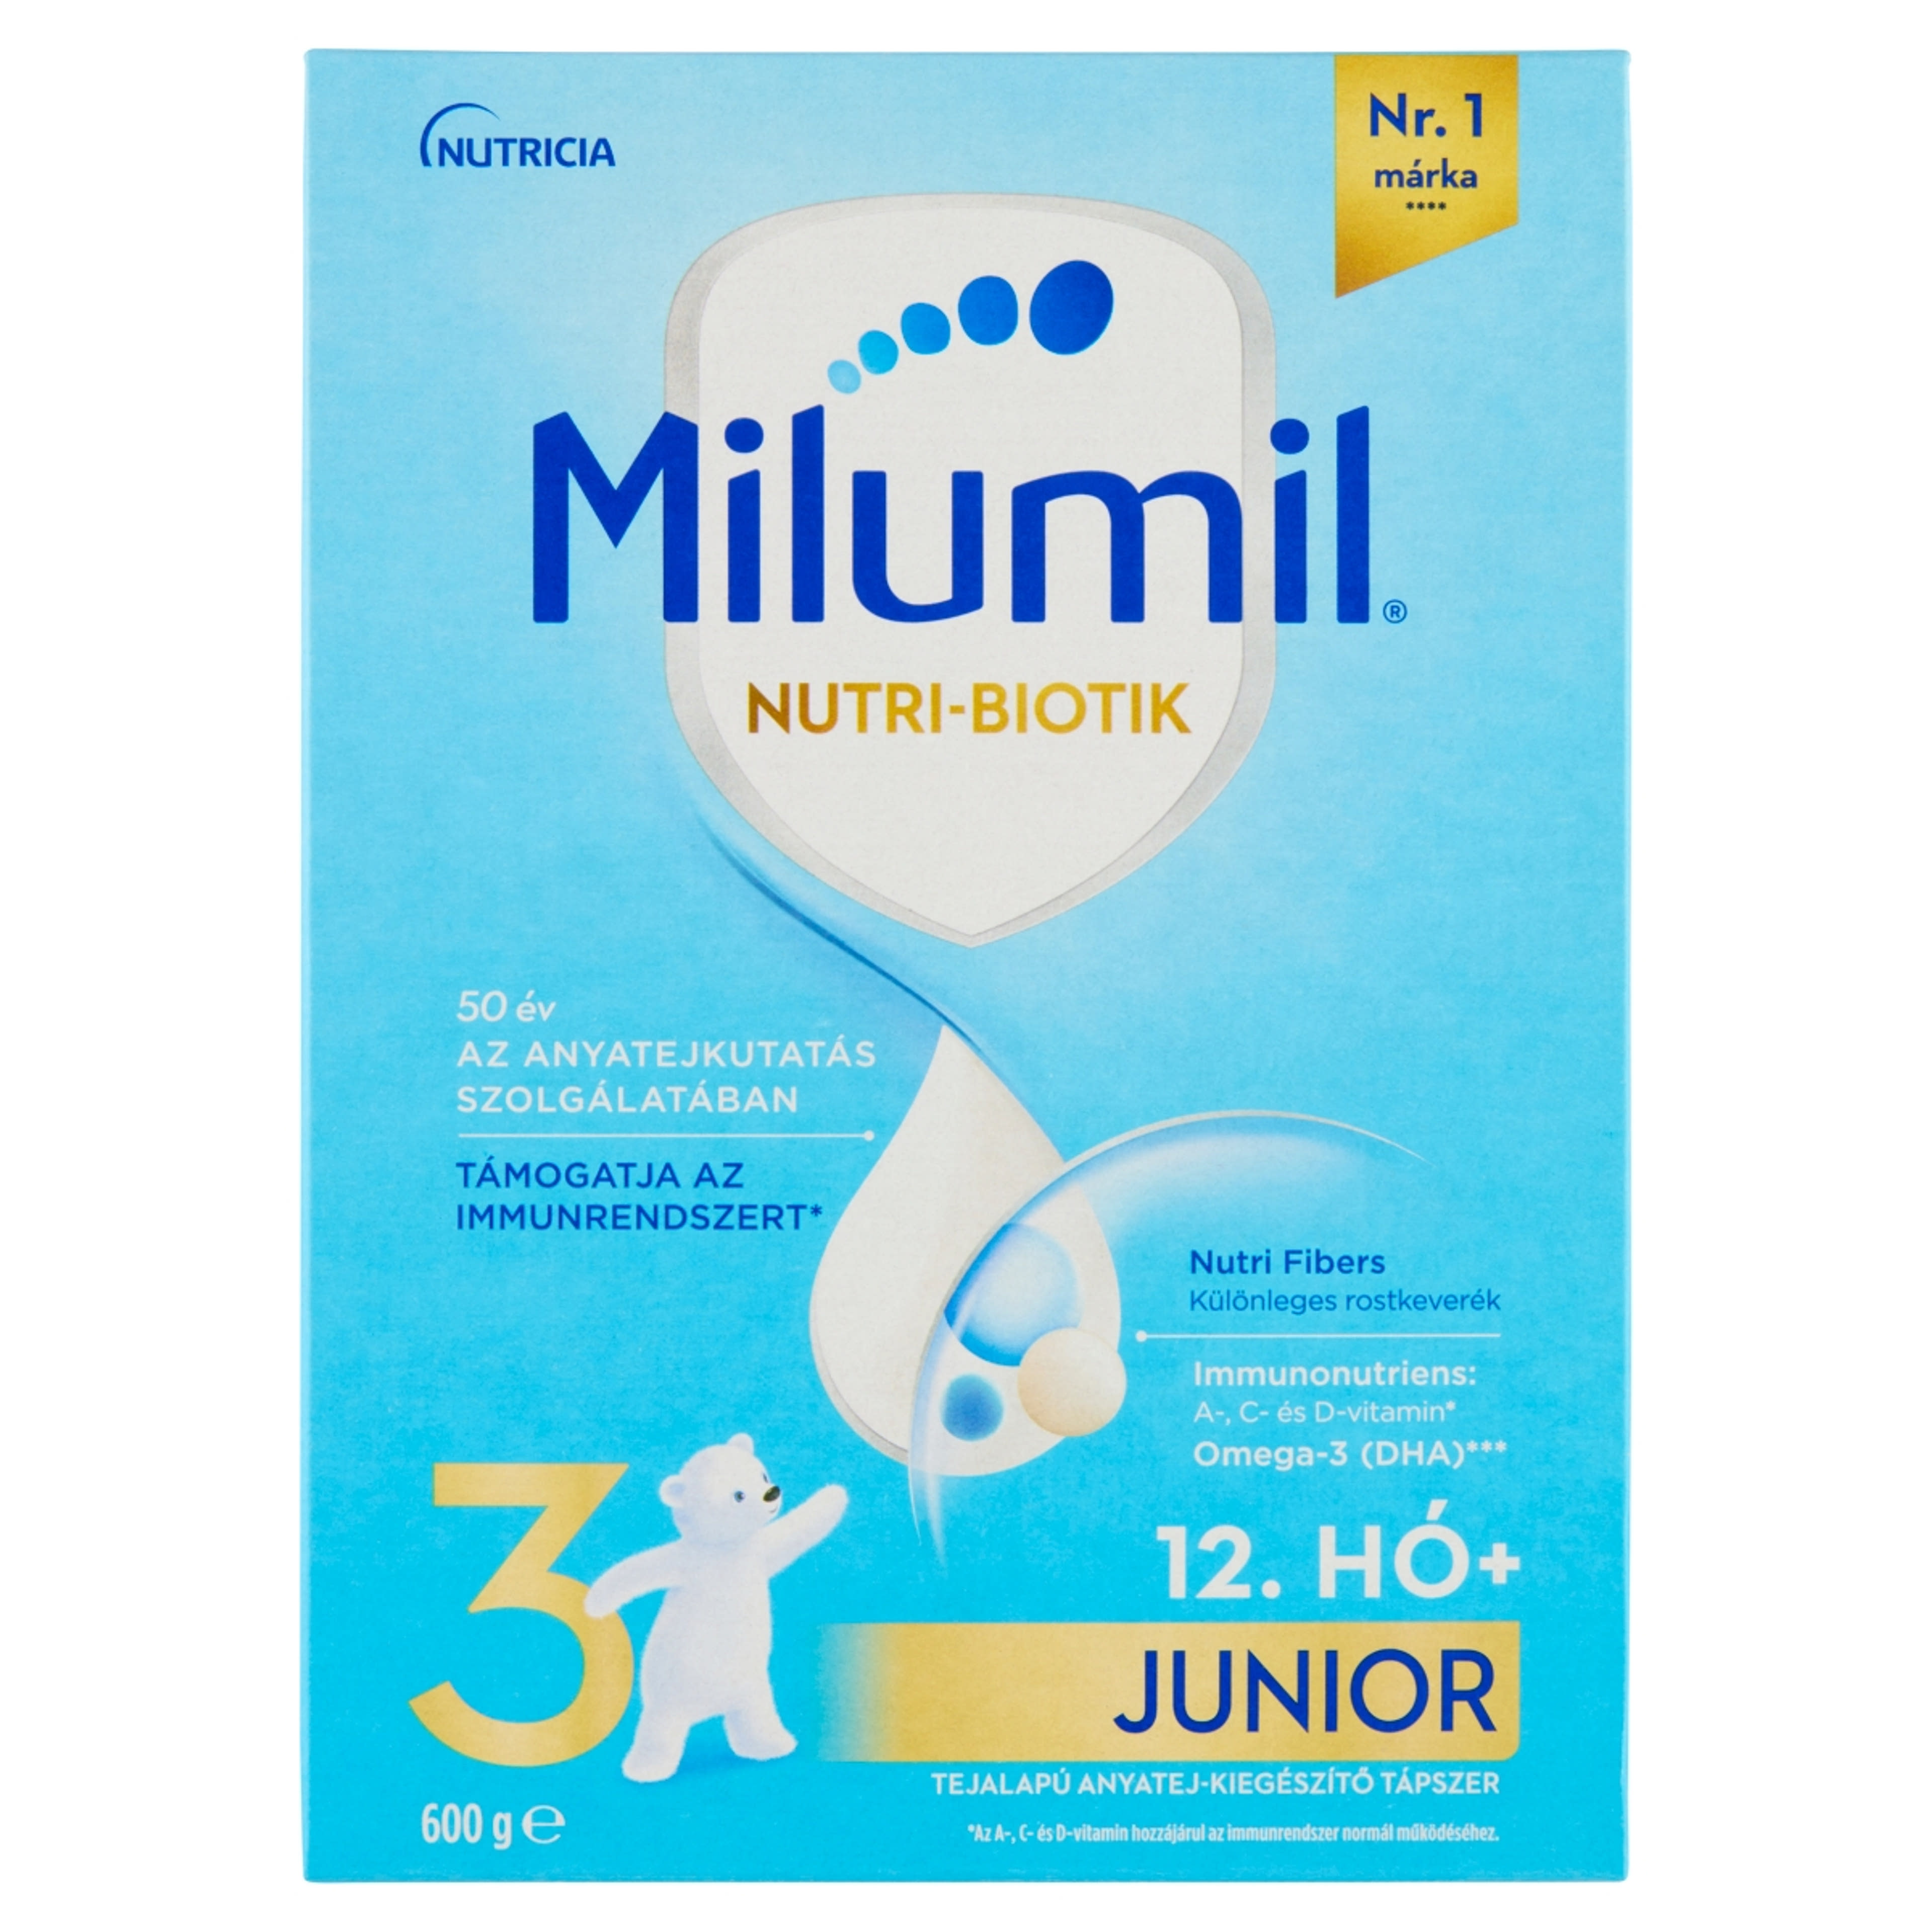 Milumil 3 Junior anyatej-kiegészítő tápszer 12. hónapos kortól - 600 g